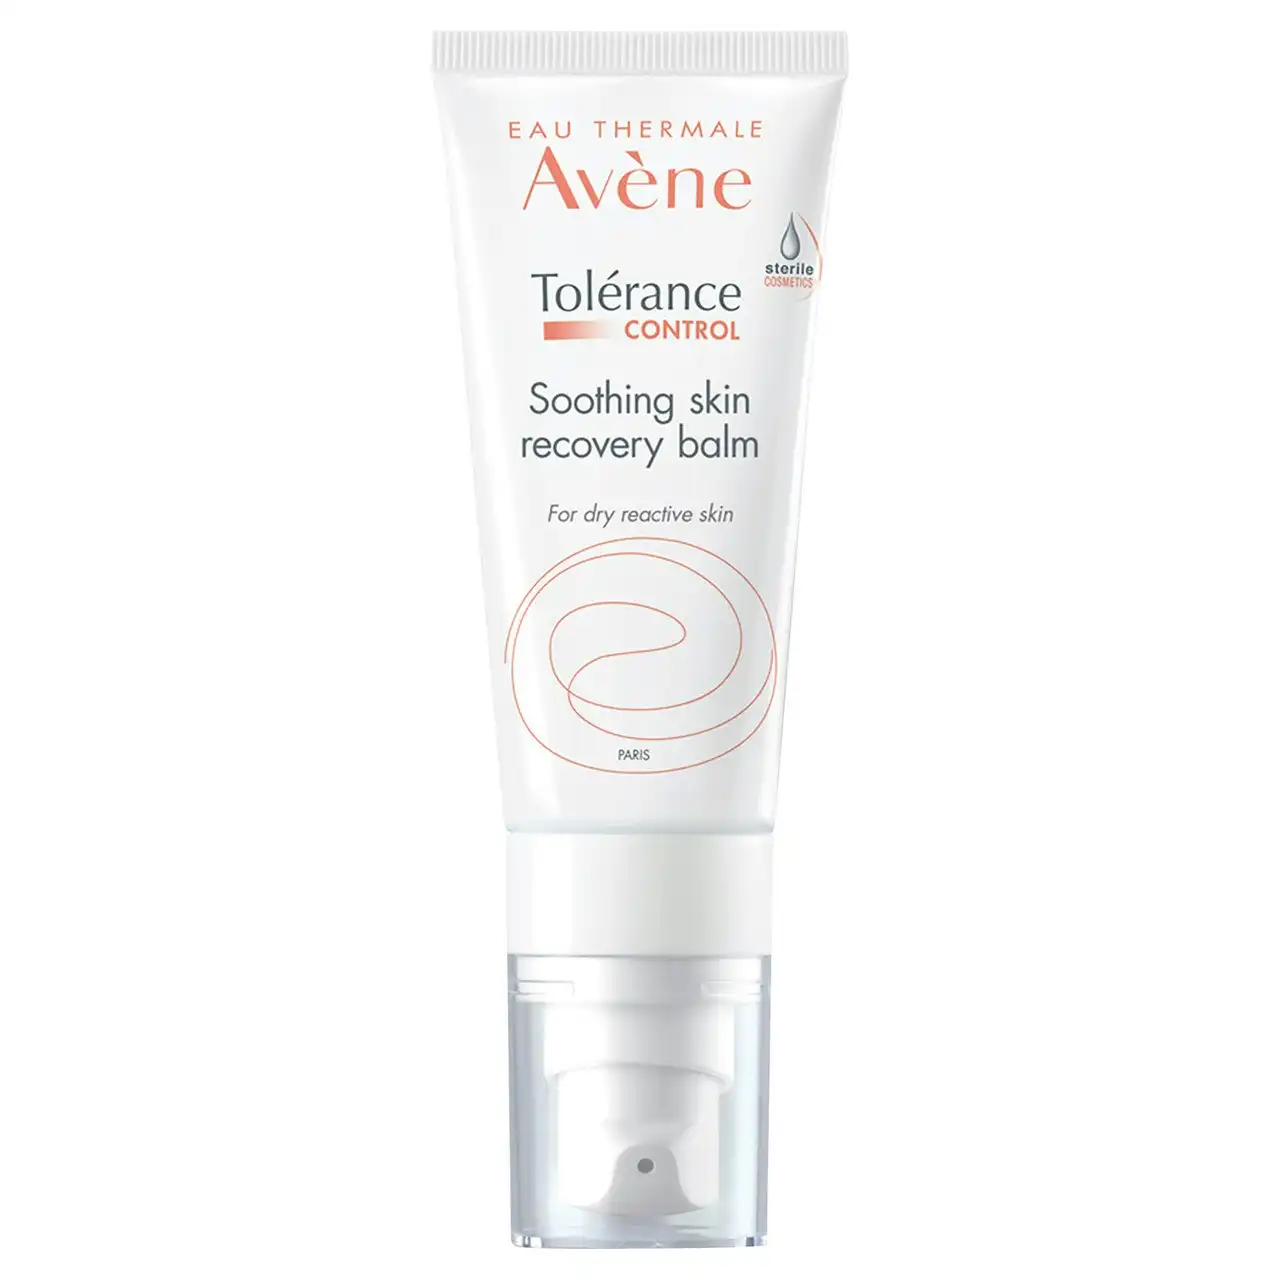 Av ne Tolerance CONTROL Soothing Skin Recovery Balm 40ml - Moisturiser for hypersensitive and dry skin